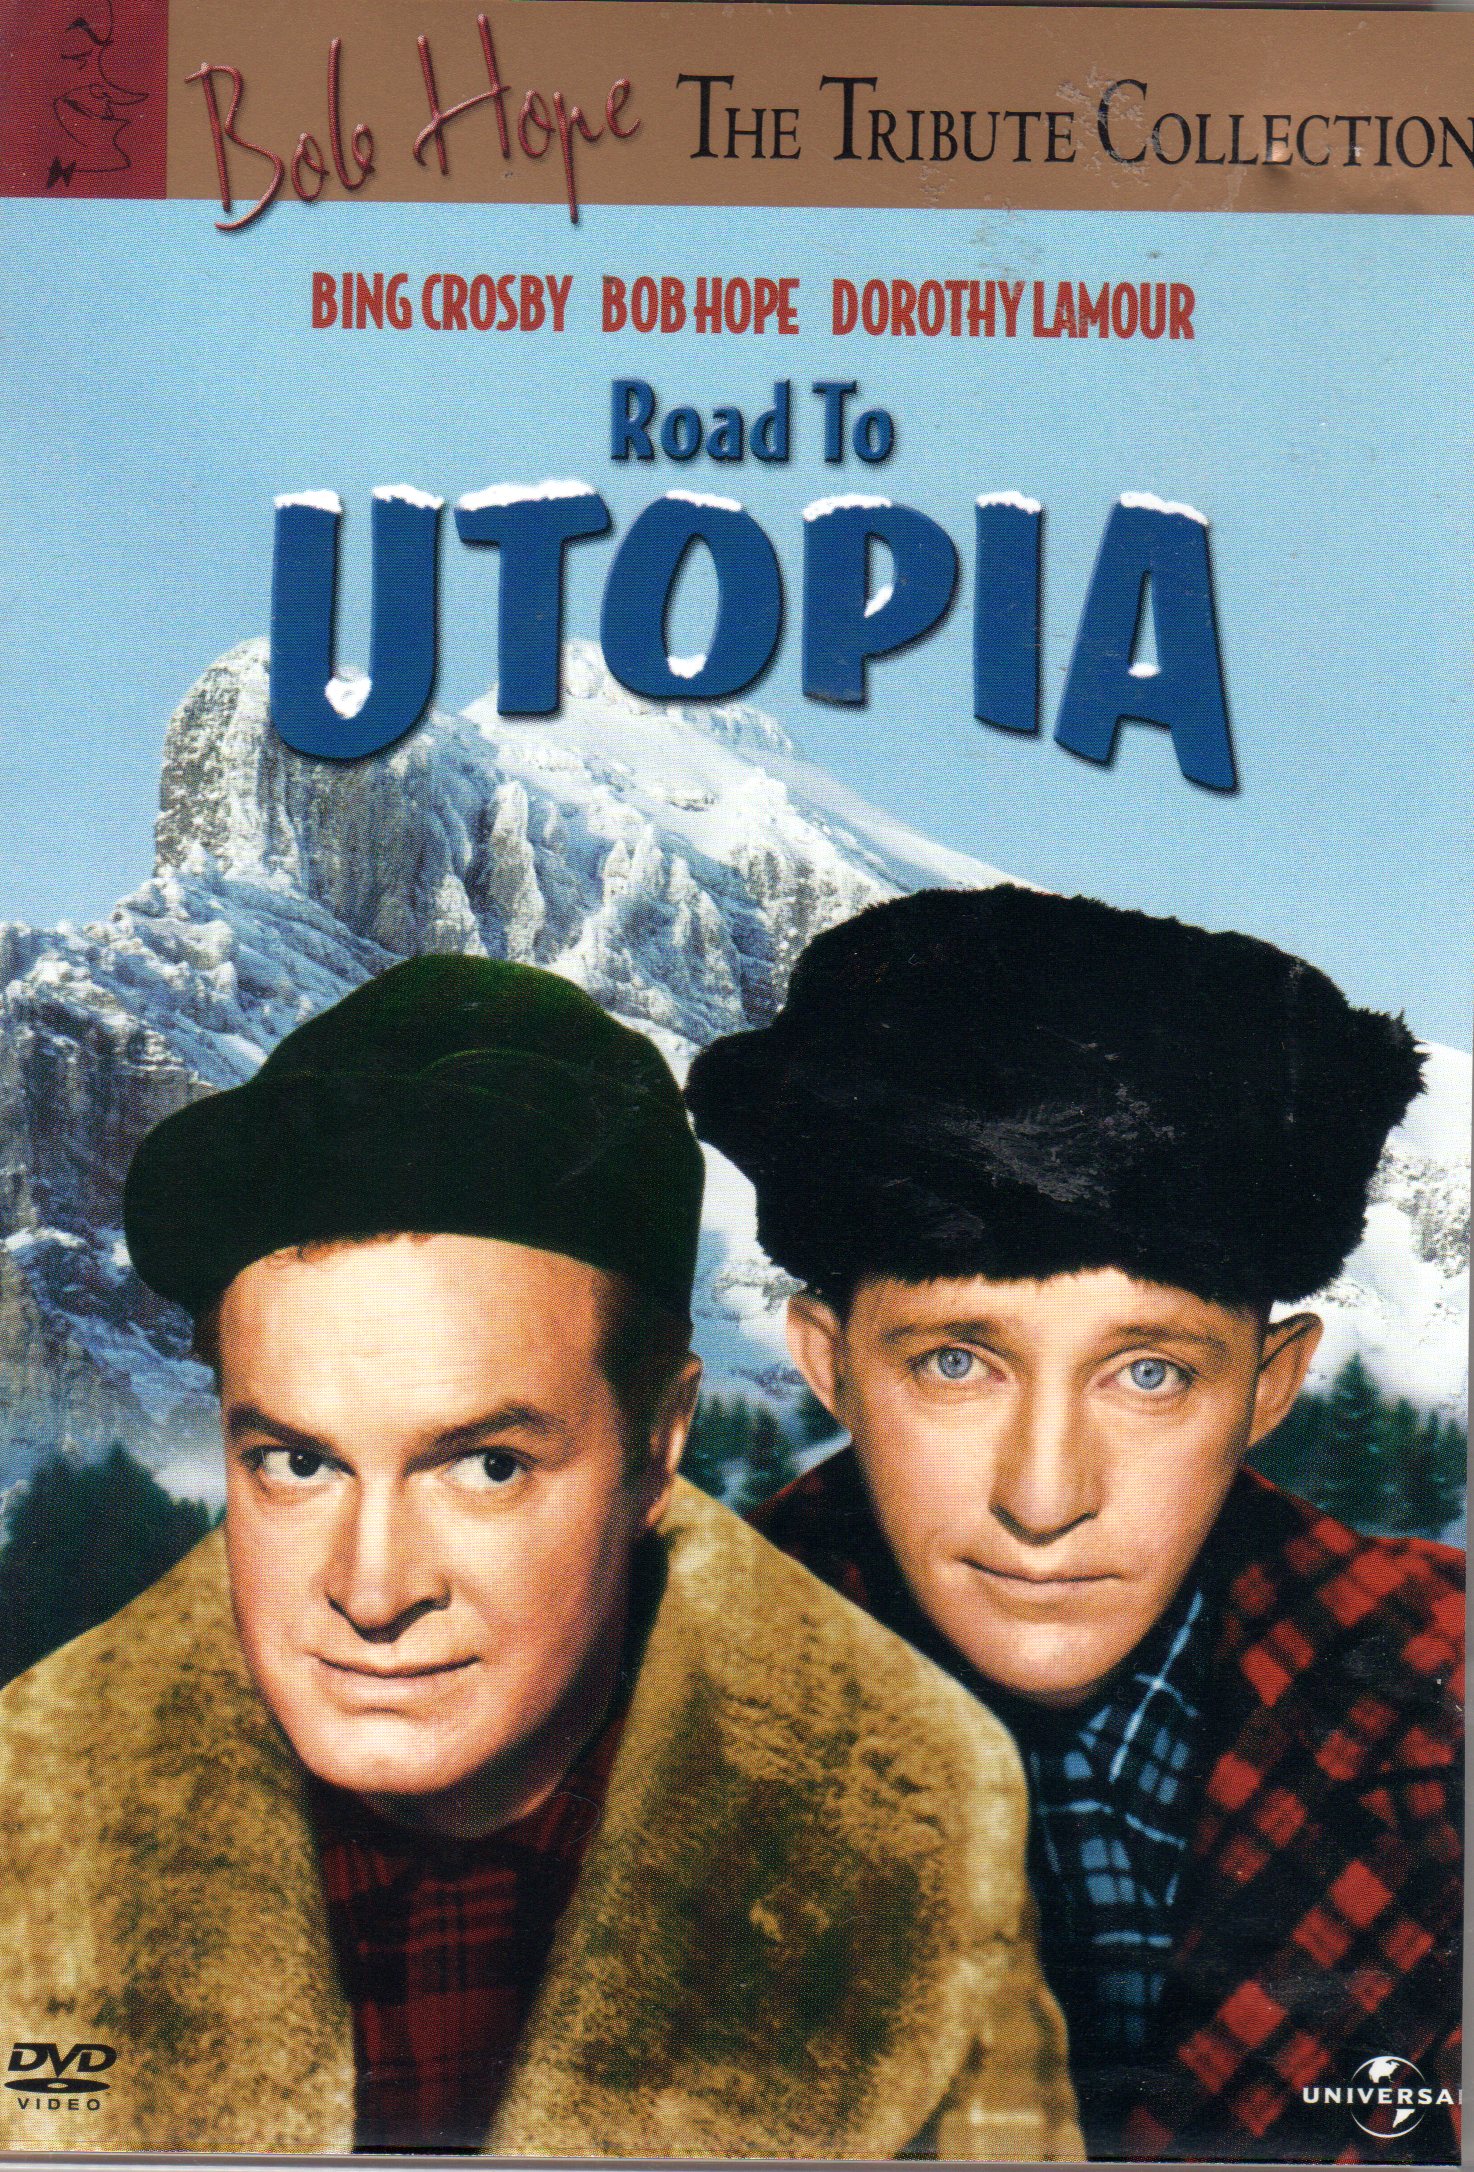 Road to Utopia Bing Crosby vintage movie poster print 